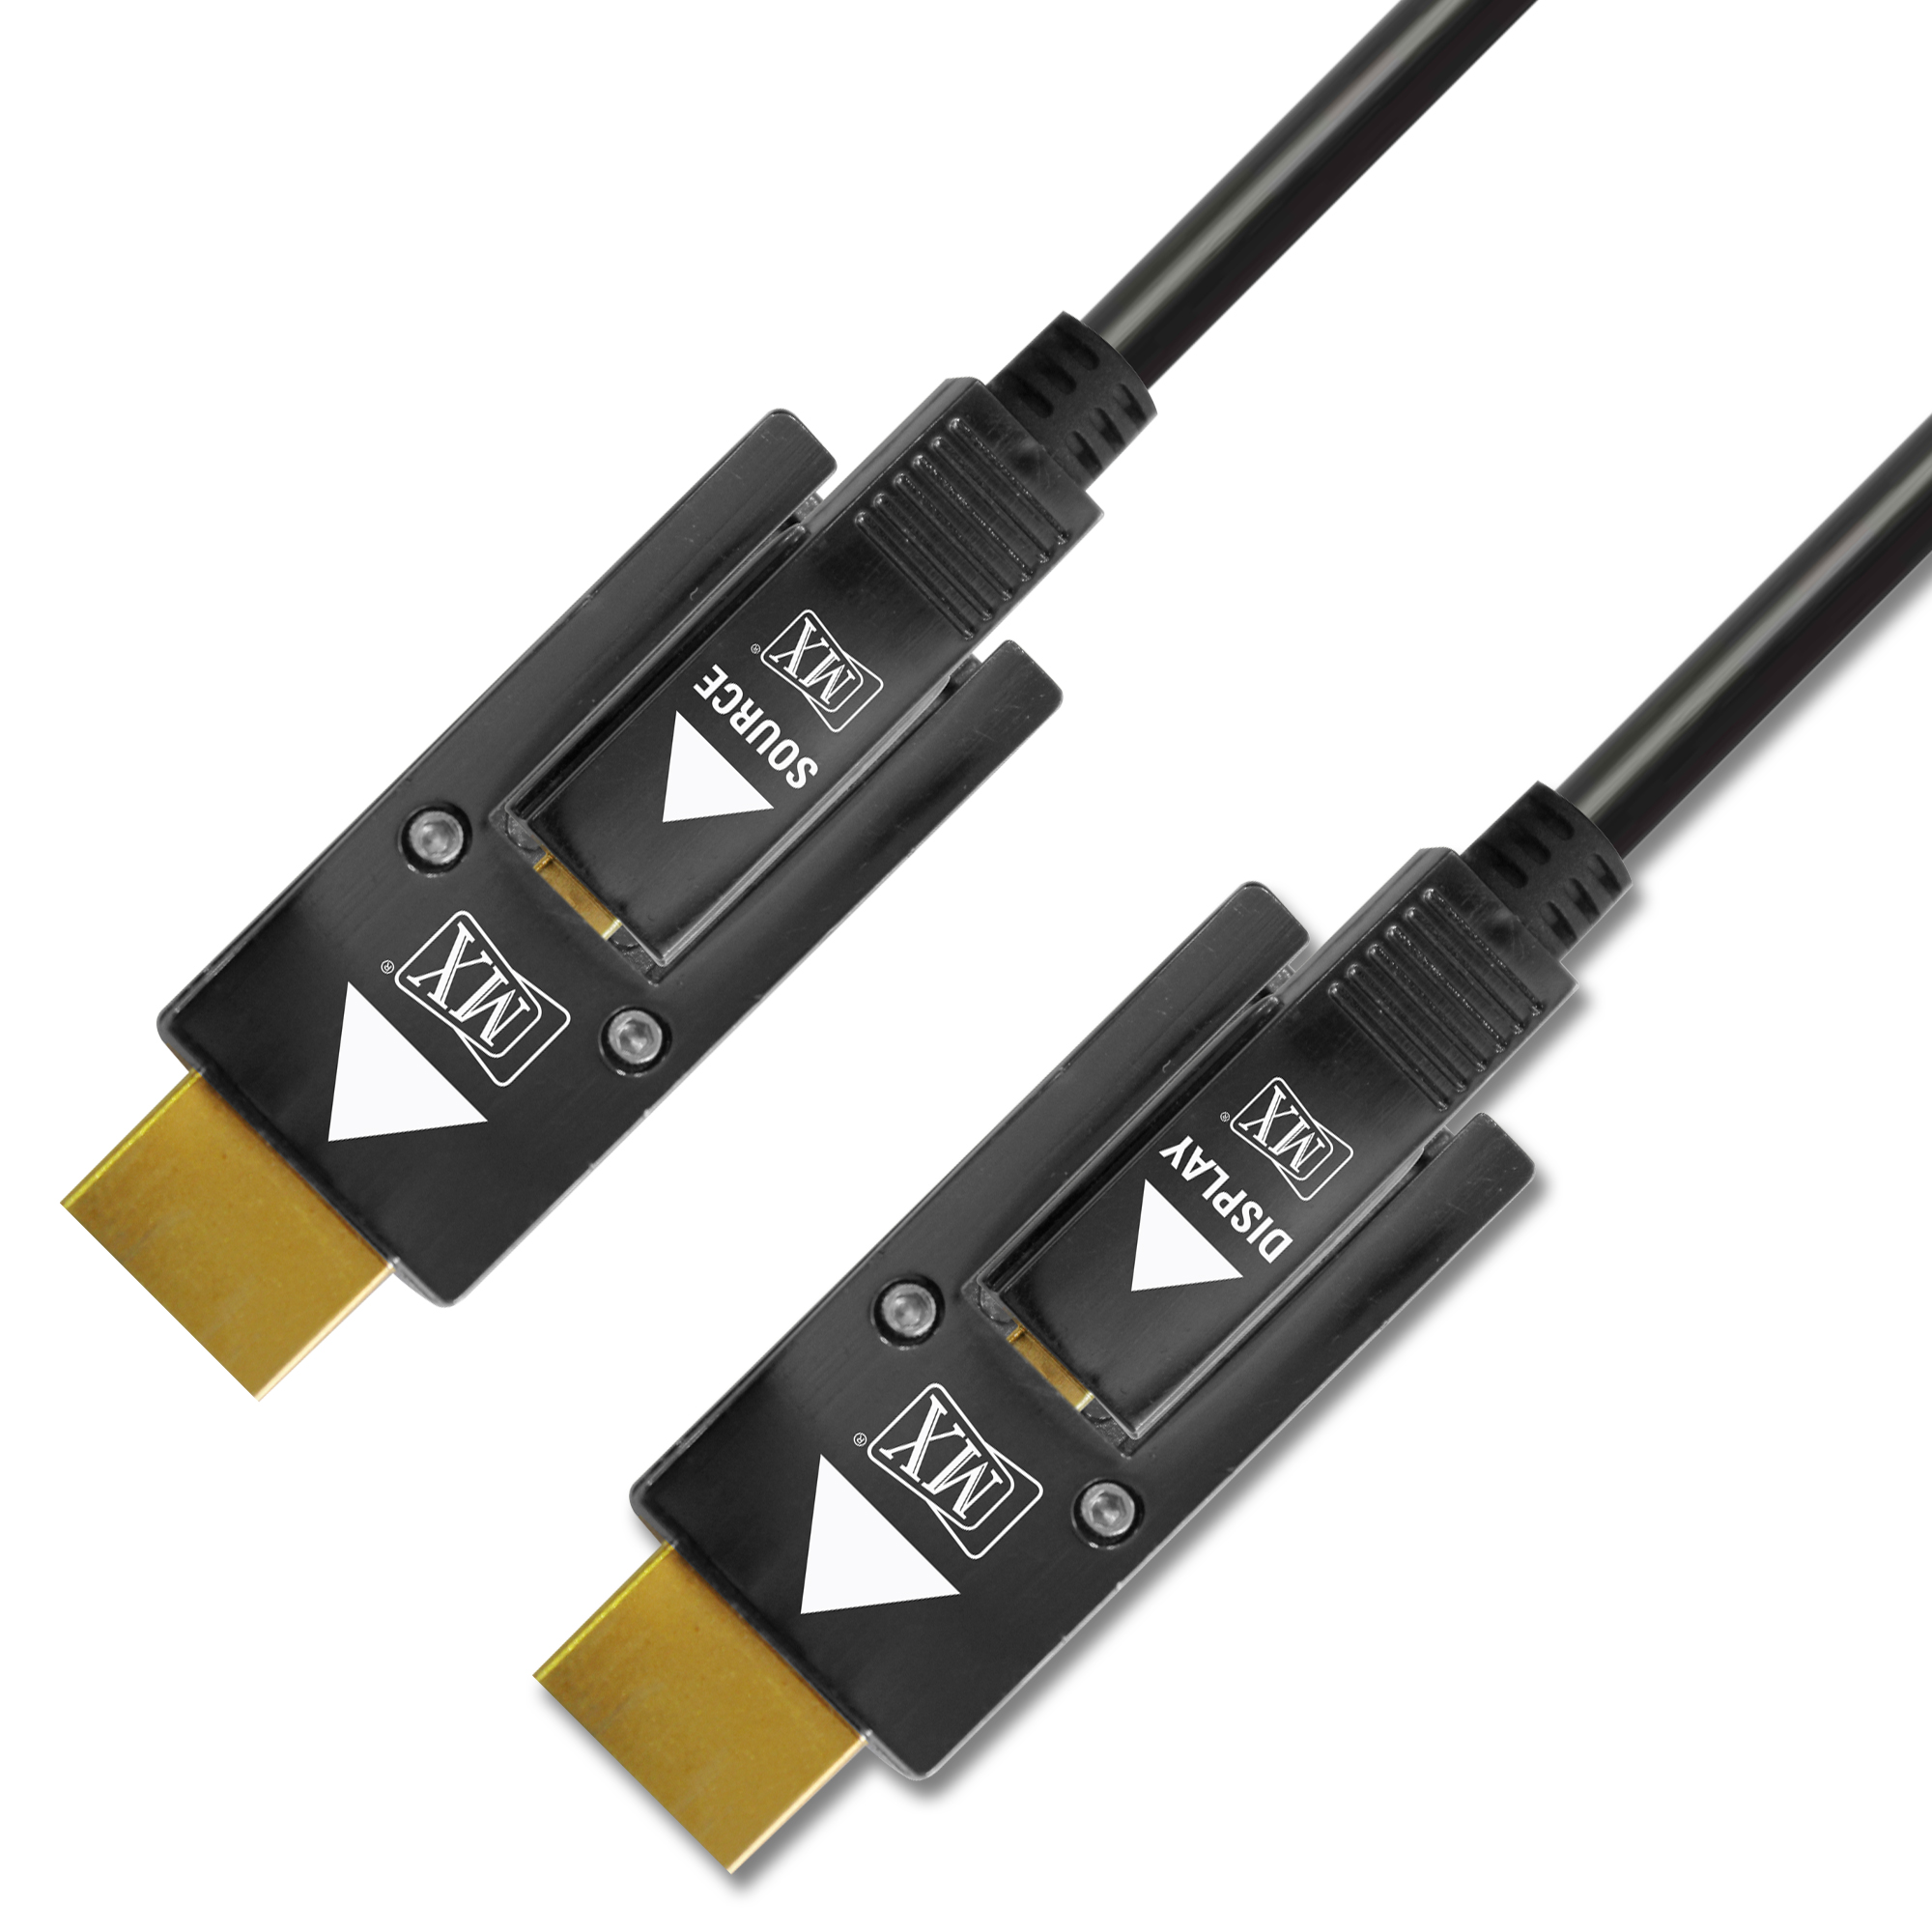 MCL Câble HDMI 2.0 fibre optique de 10 mètres